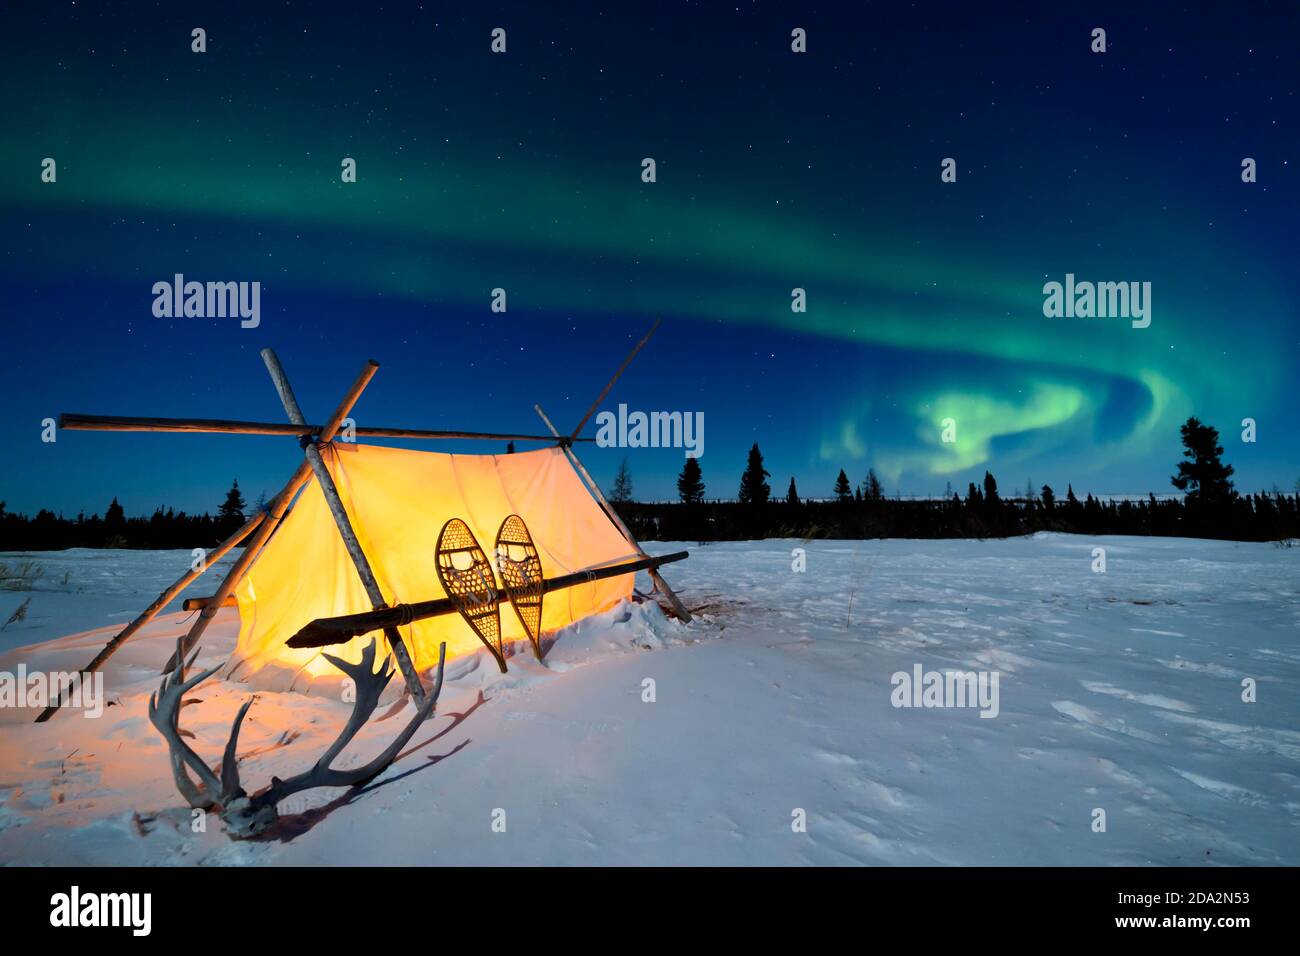 Tente de trappeurs, raquettes et bois sous le ciel nocturne avec Aurora borealis, aurores boréales, parc national Wapusk, Manitoba, Canada Banque D'Images